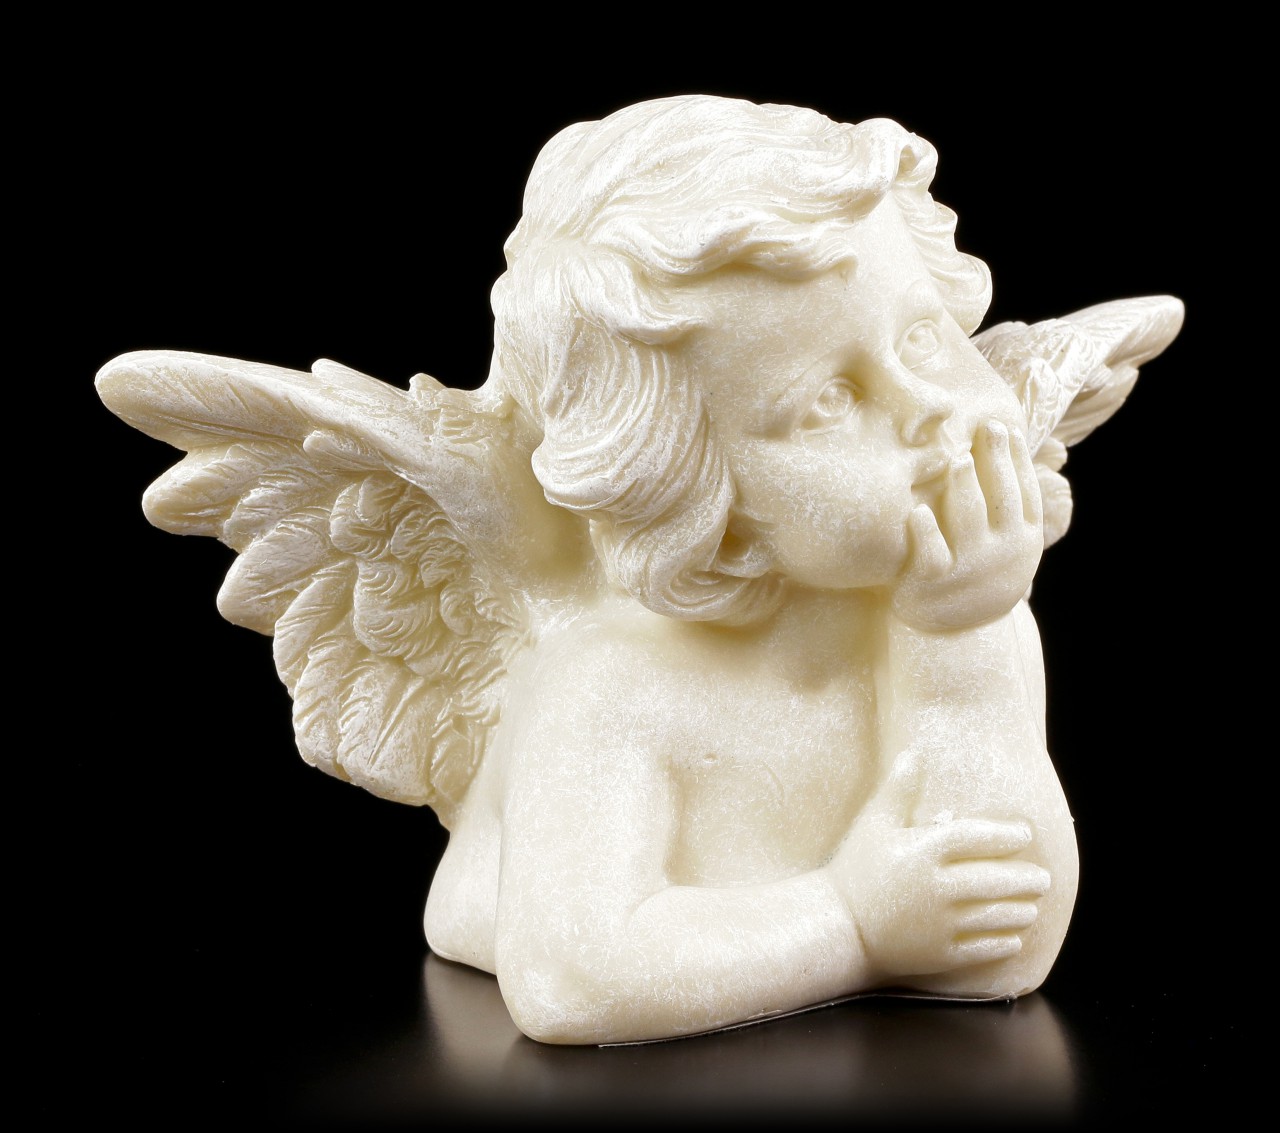 Angel Garden Figurine - Little Cherub dreams